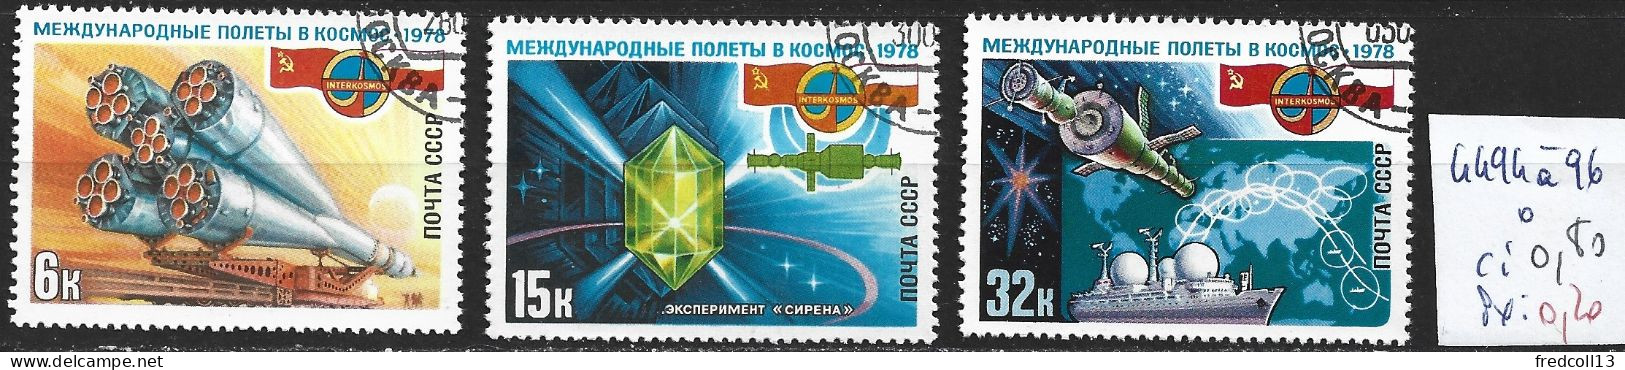 RUSSIE 4494 à 96 Oblitérés Côte 0.80 € - Used Stamps